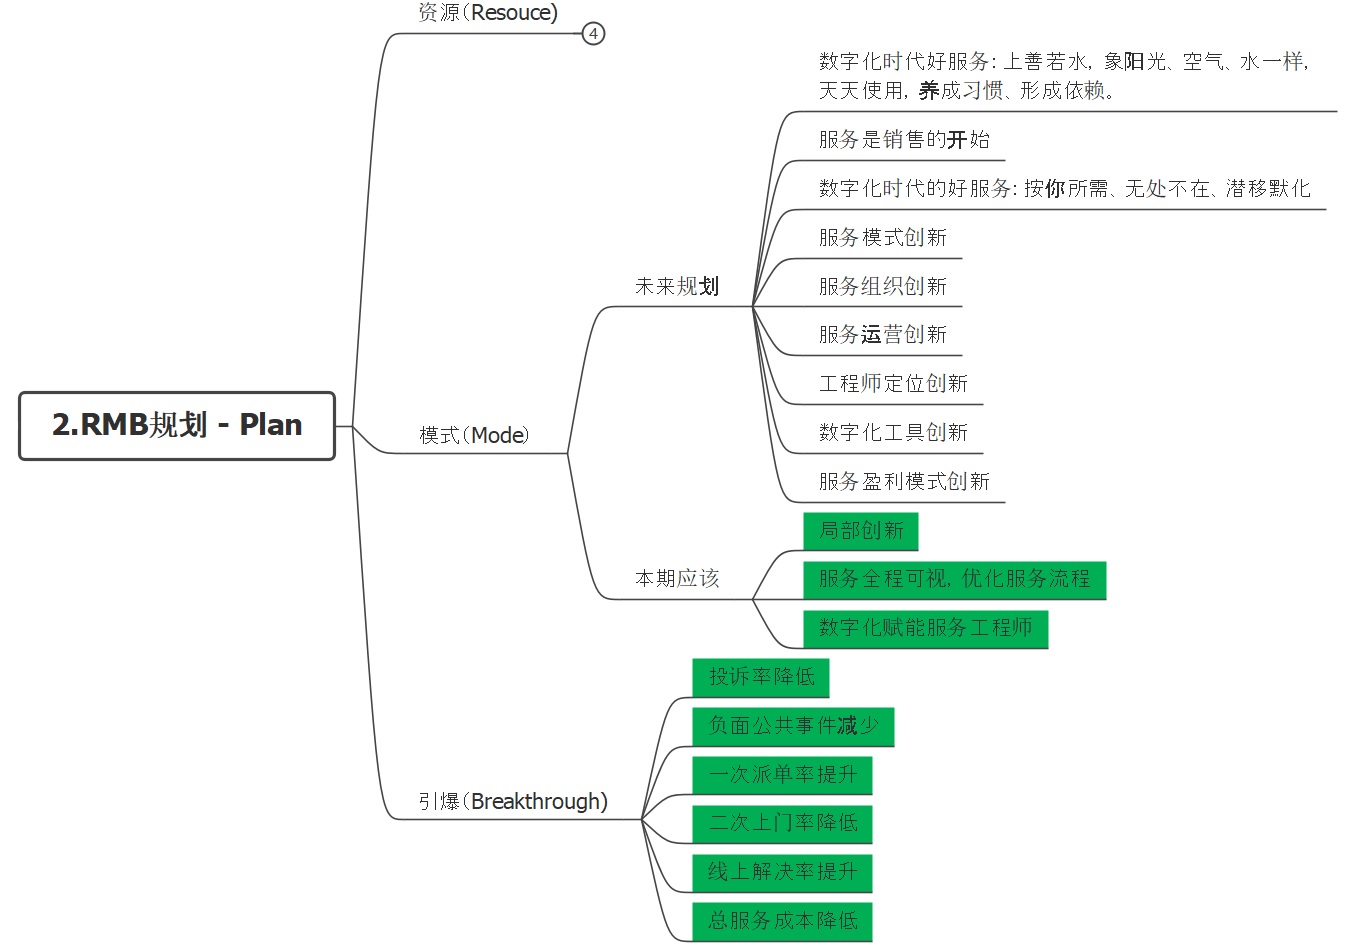 数字化项目规划和经验沉淀工具 – APPFI思维导图